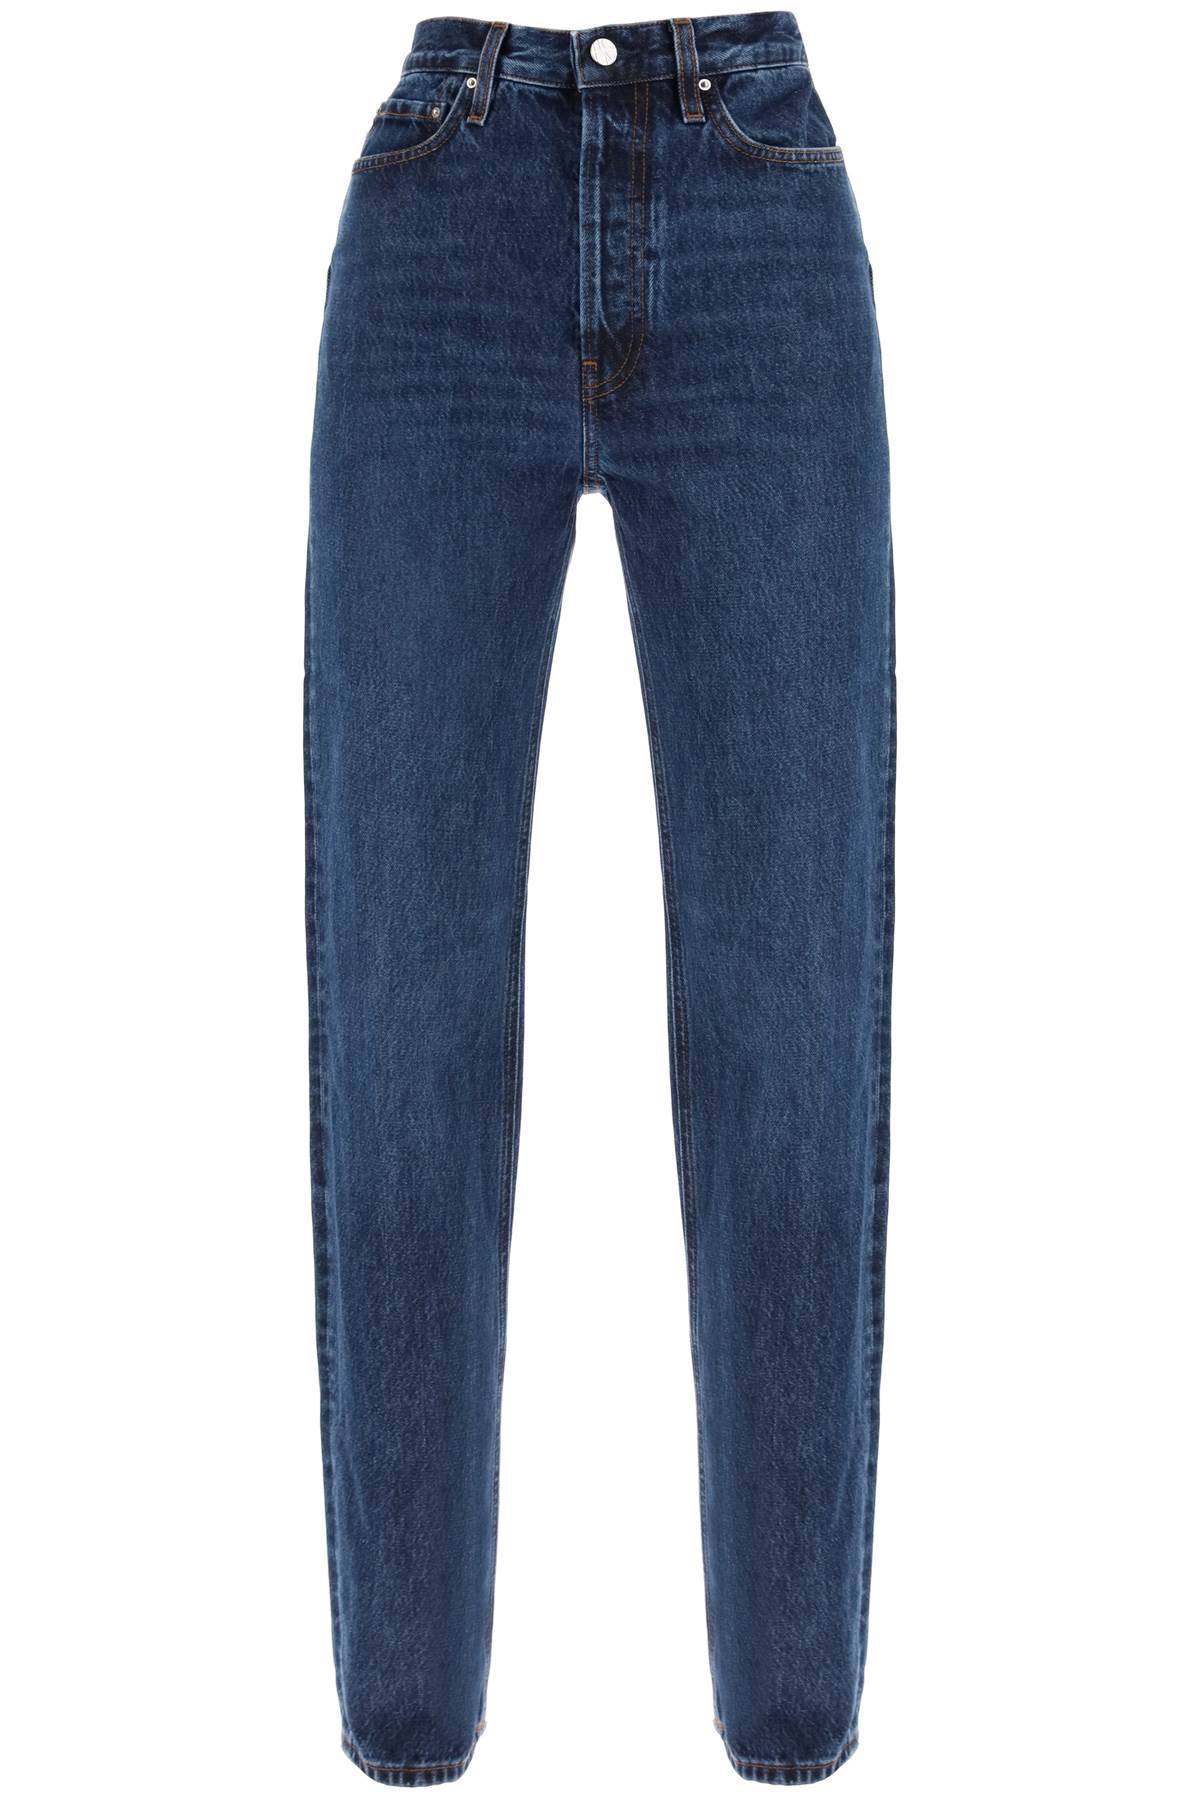 TOTEME organic denim classic cut jeans